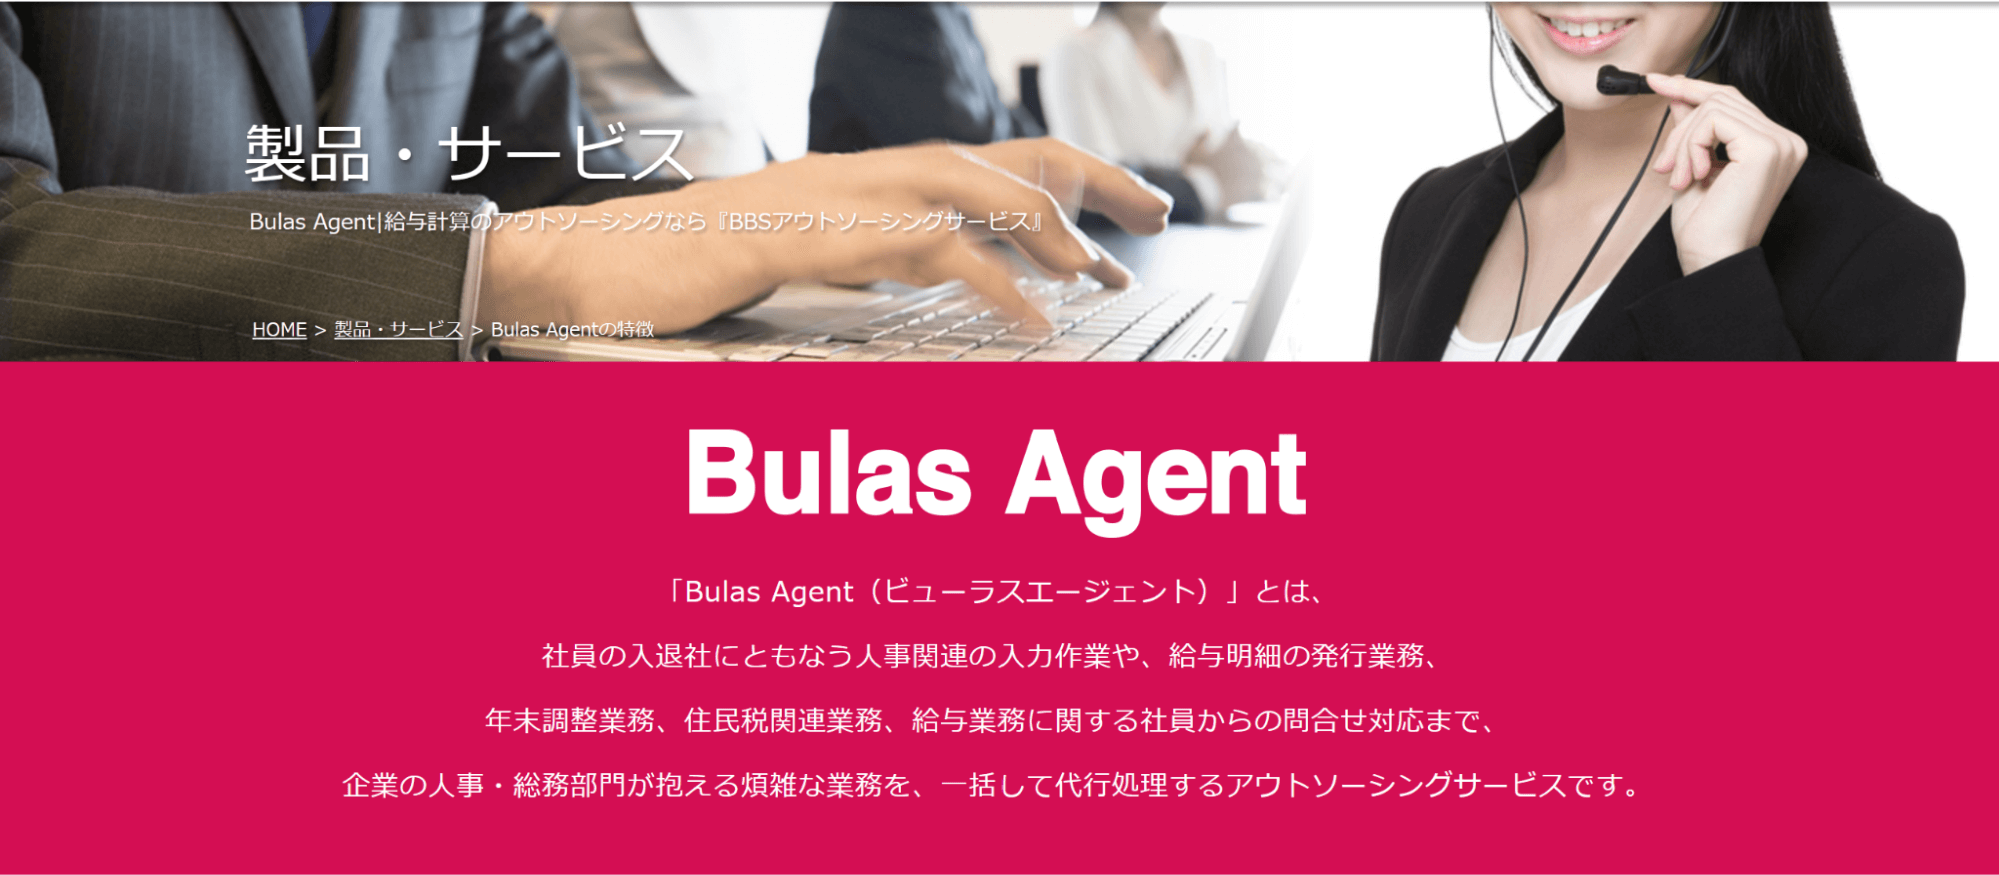 Bulas Agent